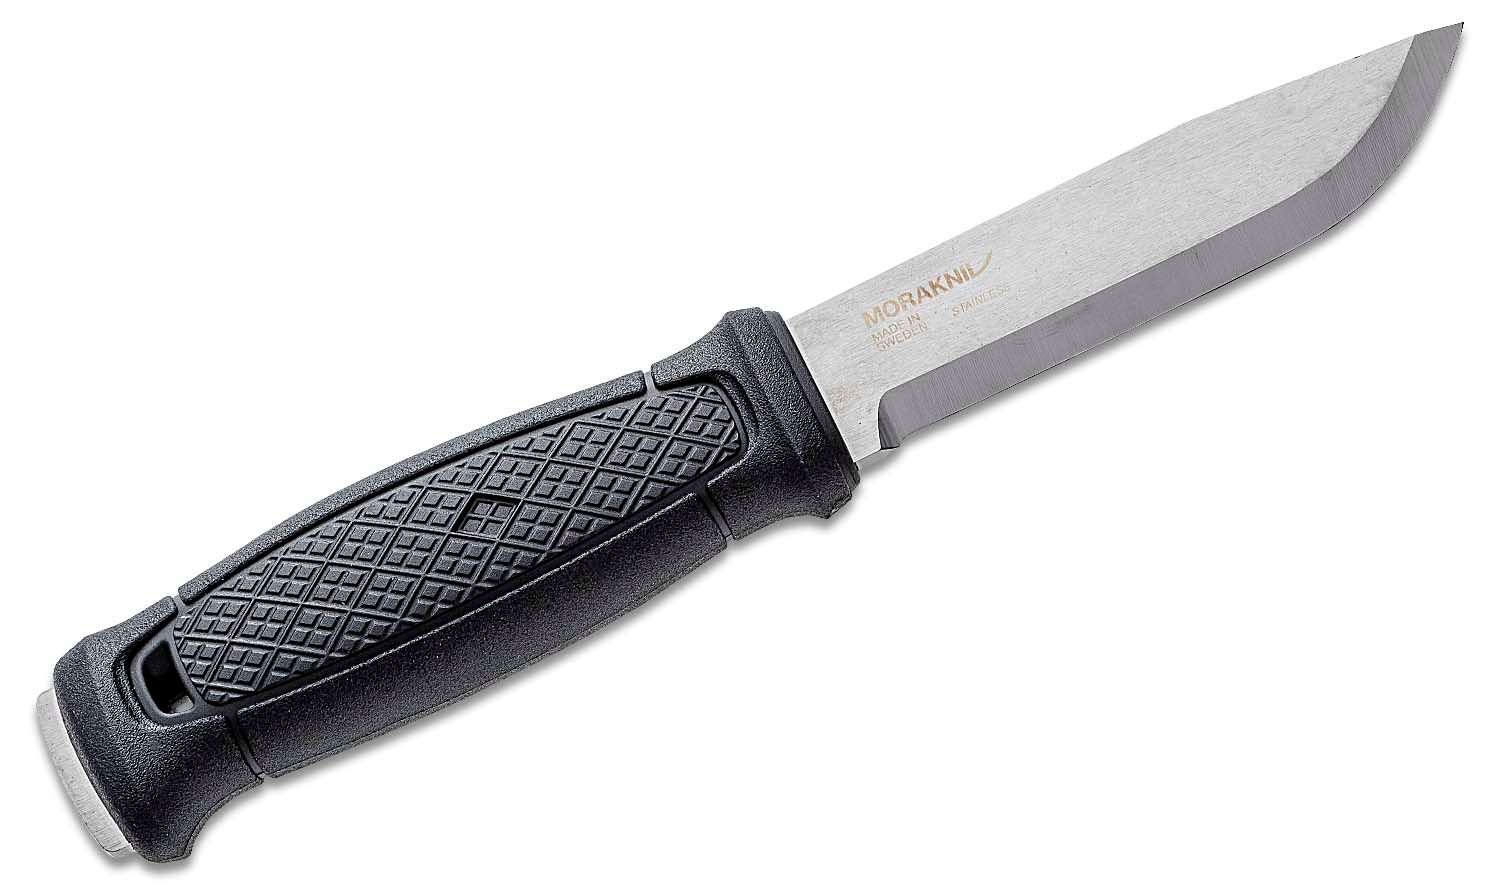 Mora Garberg Fixed Knife 4.3 Satin Stainless Steel (Sweden